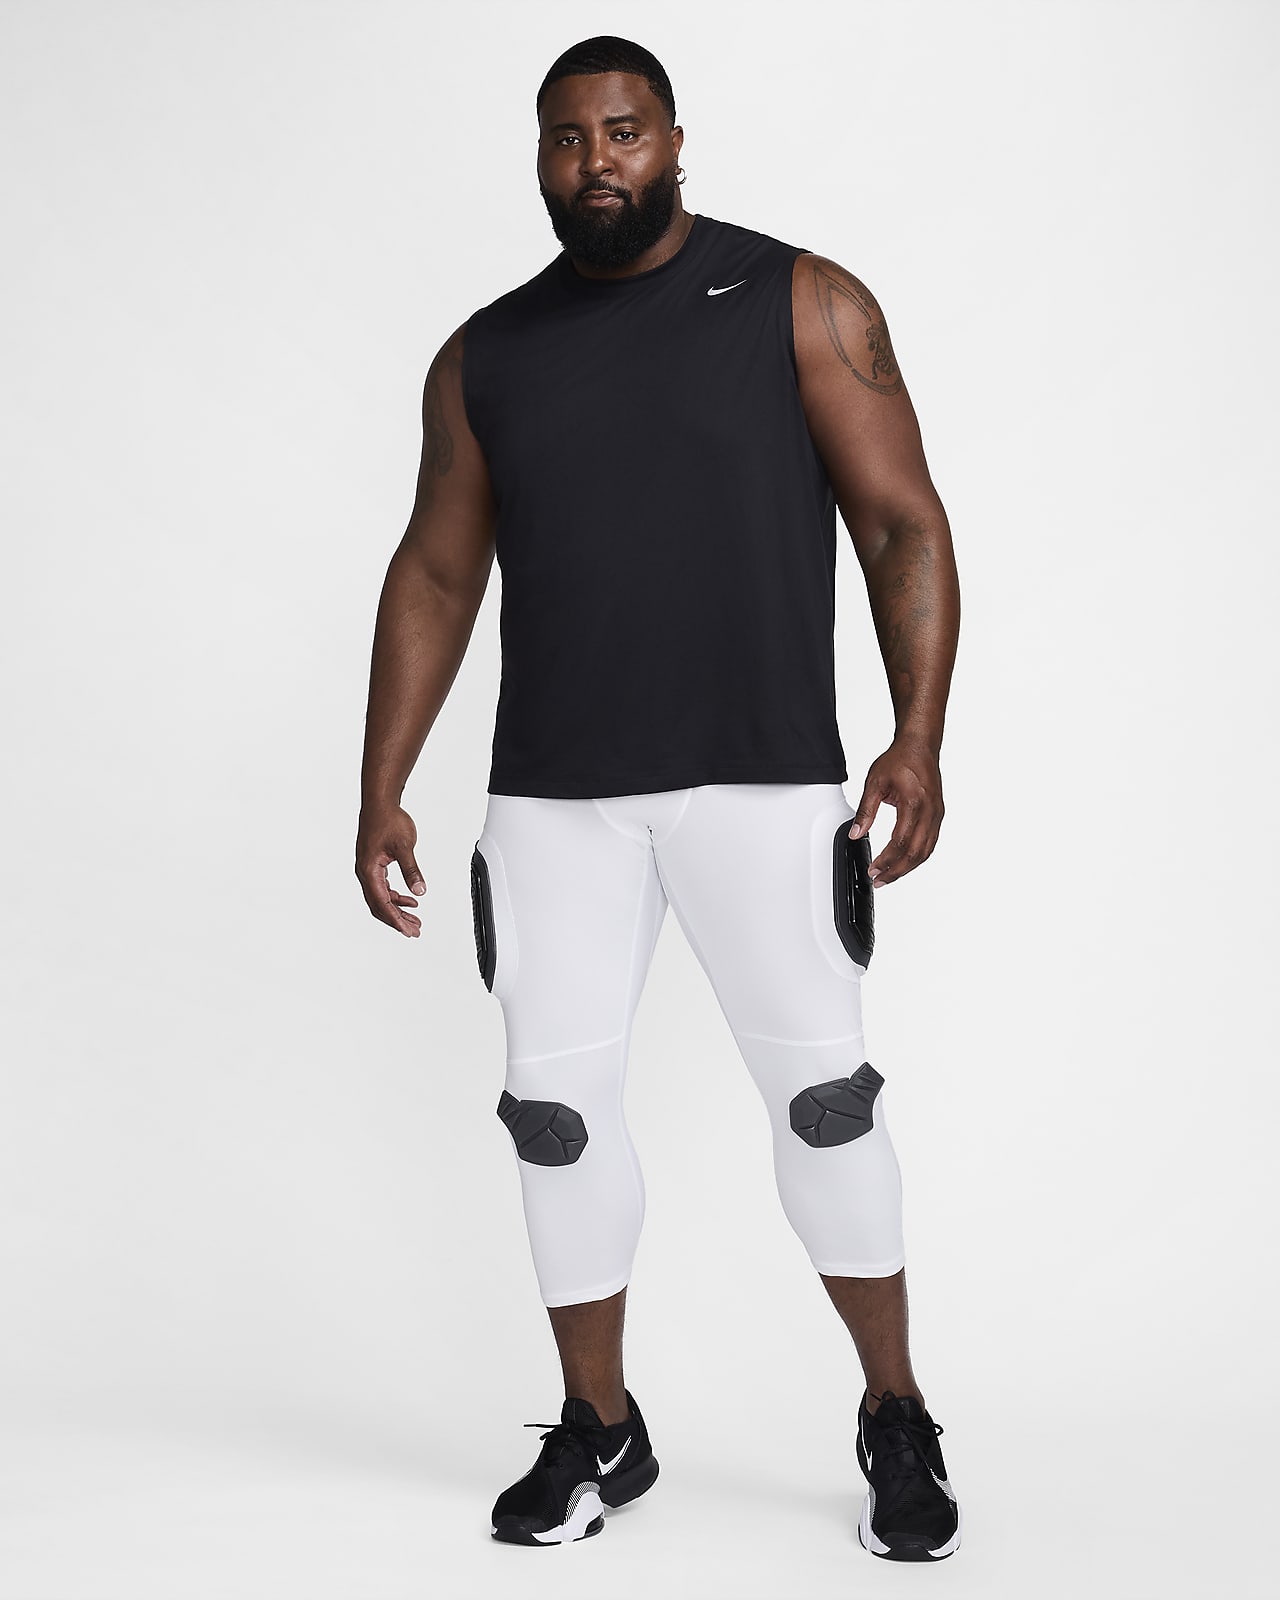 Nike Pro Men's Dri-FIT Black/White 3/4 Training Tights (DD1919-010)  M/L/XL/XXL